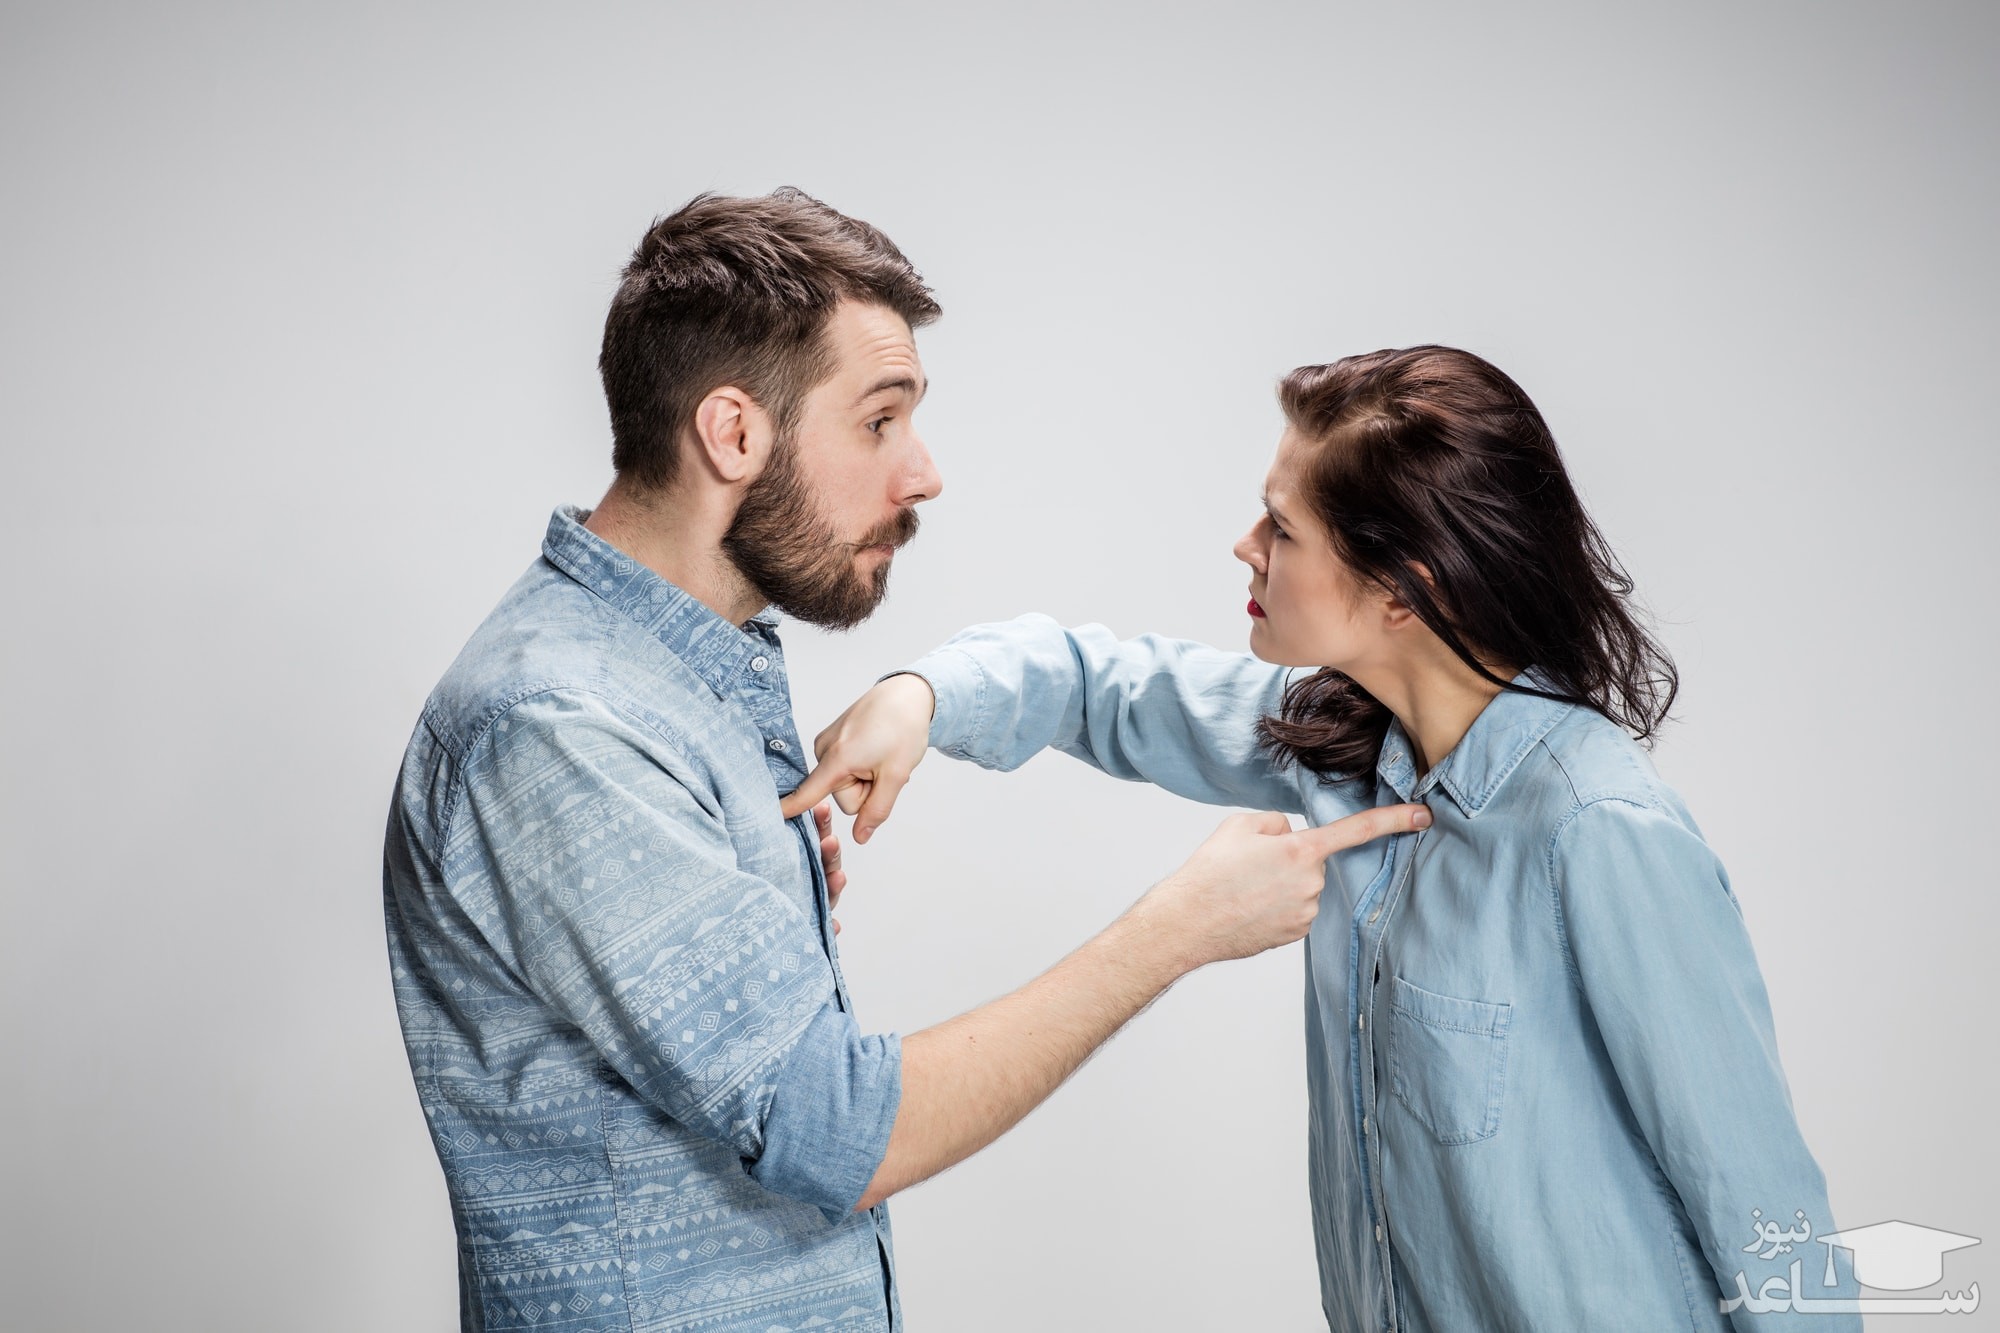 کارها و رفتارهای ممنوعه پس از دعوا با همسر